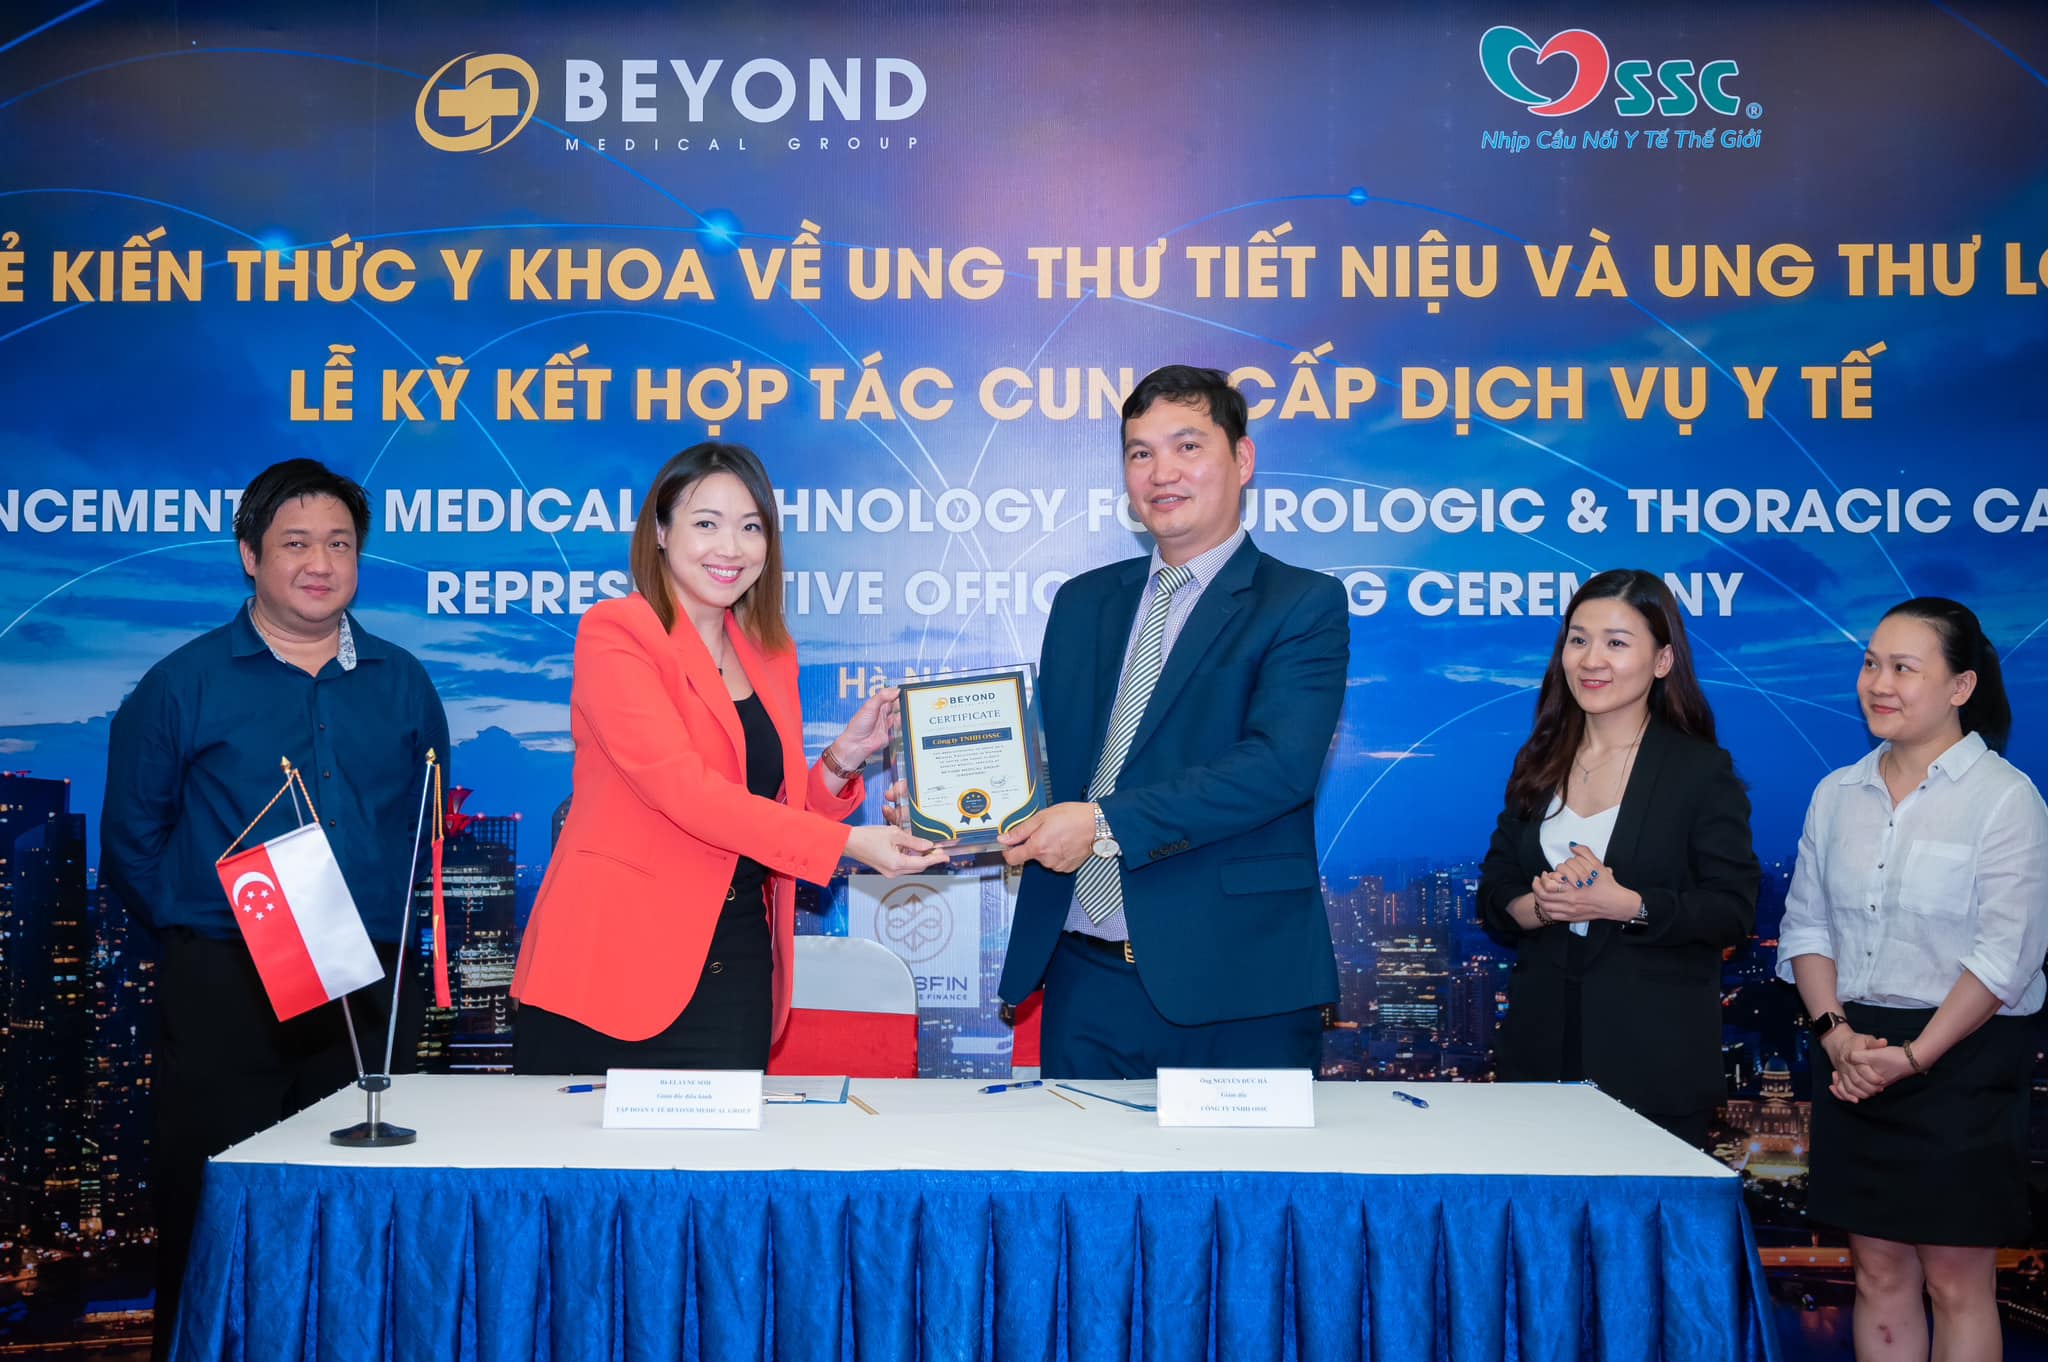 Tập đoàn Beyond Medical Group – Cung cấp dịch vụ y tế hàng đầu thế giới